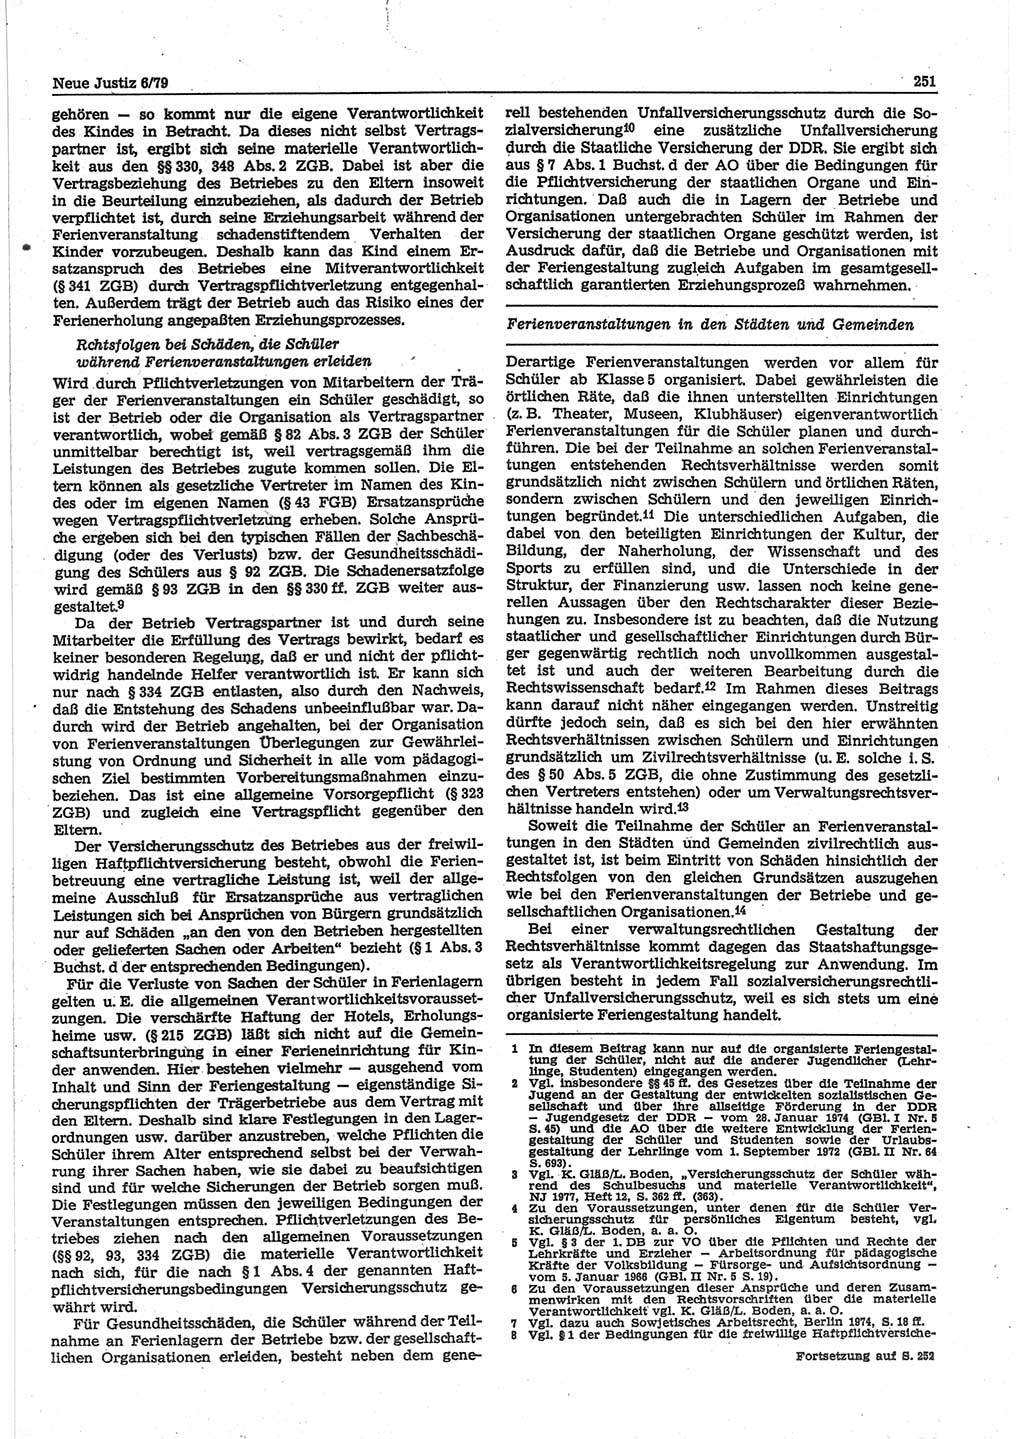 Neue Justiz (NJ), Zeitschrift für sozialistisches Recht und Gesetzlichkeit [Deutsche Demokratische Republik (DDR)], 33. Jahrgang 1979, Seite 251 (NJ DDR 1979, S. 251)